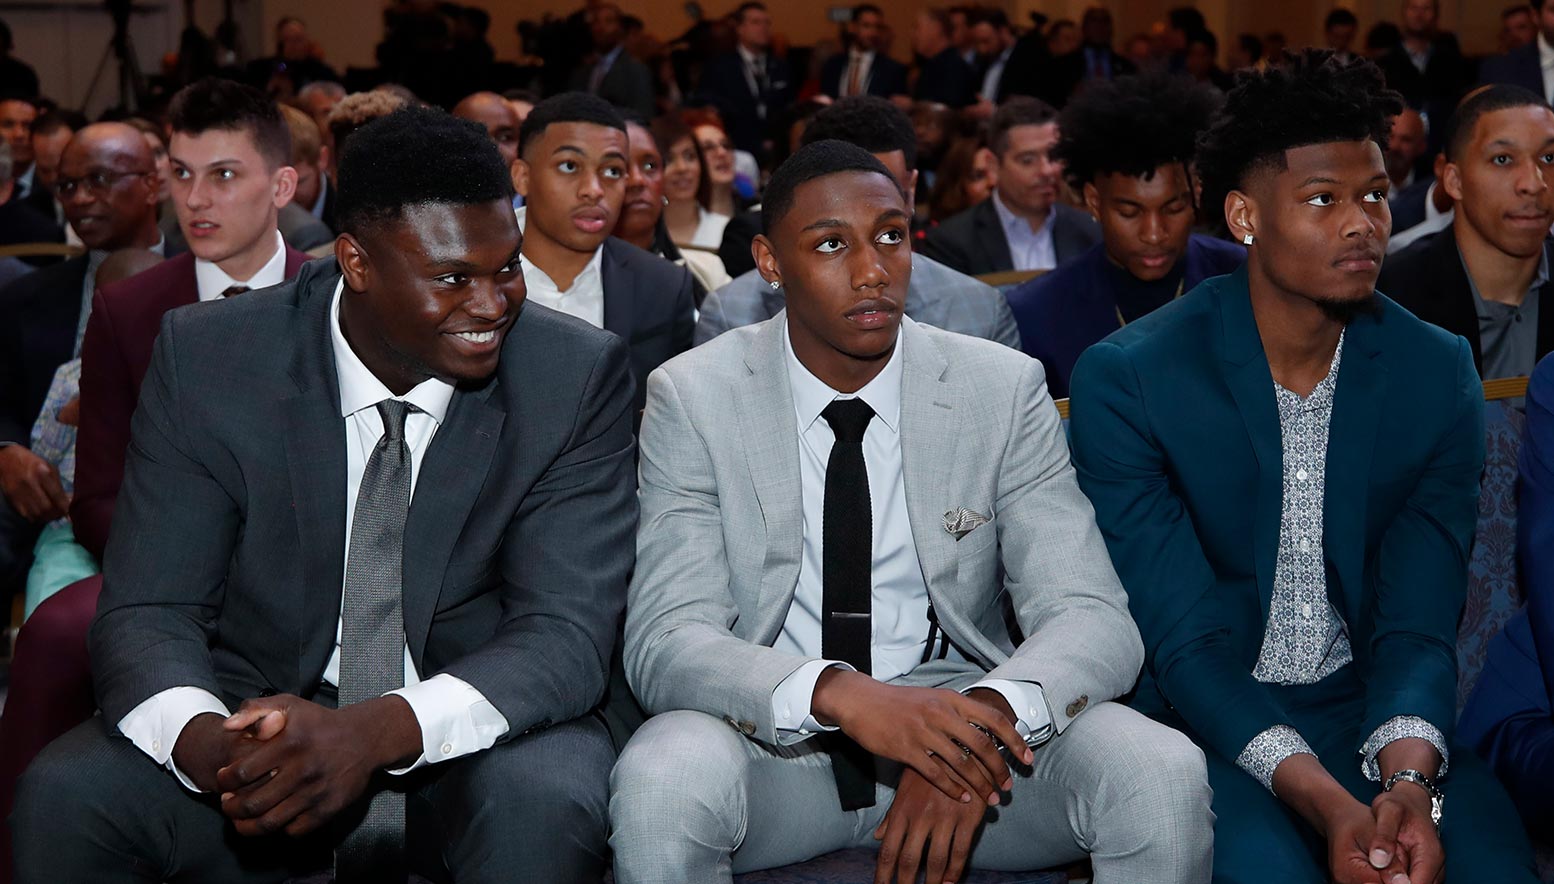 NBA Draft prospects Zion Williamson, Ja Morrant, and RJ Barrett